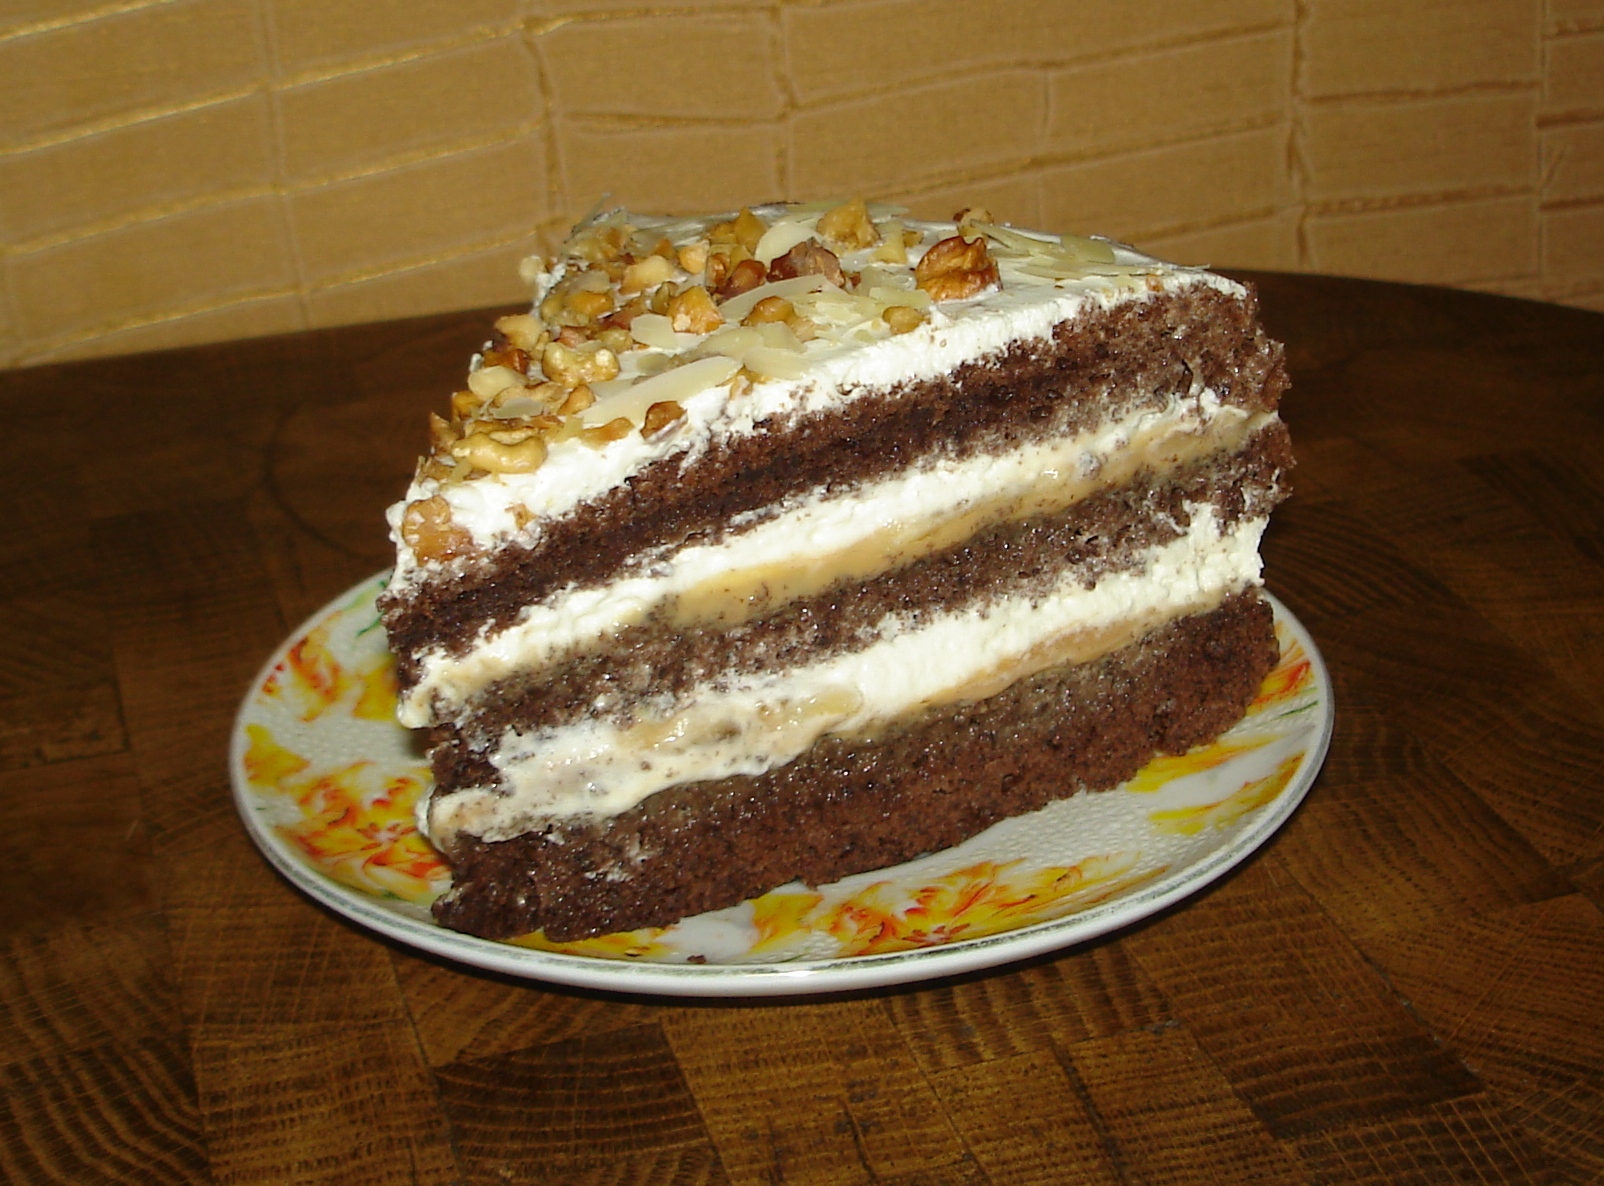 Csokoládé-banán torta (Szeleznev desszertje alapján)